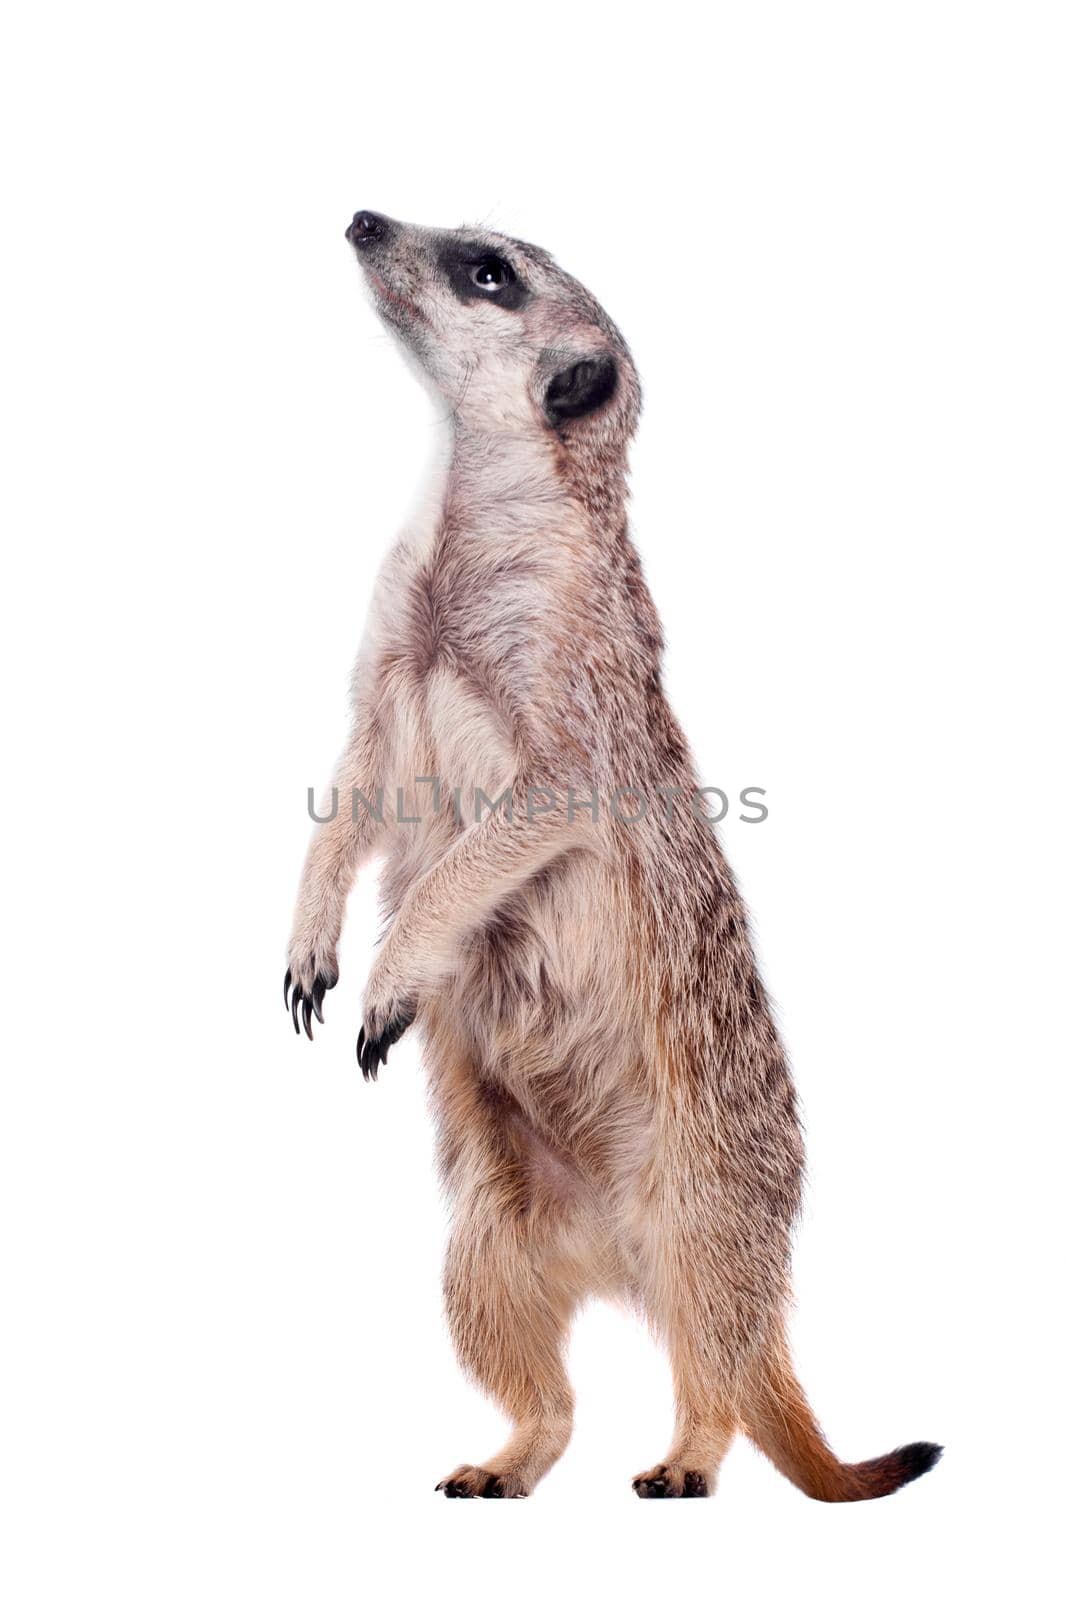 The meerkat or suricate, Suricata suricatta, isolated on white